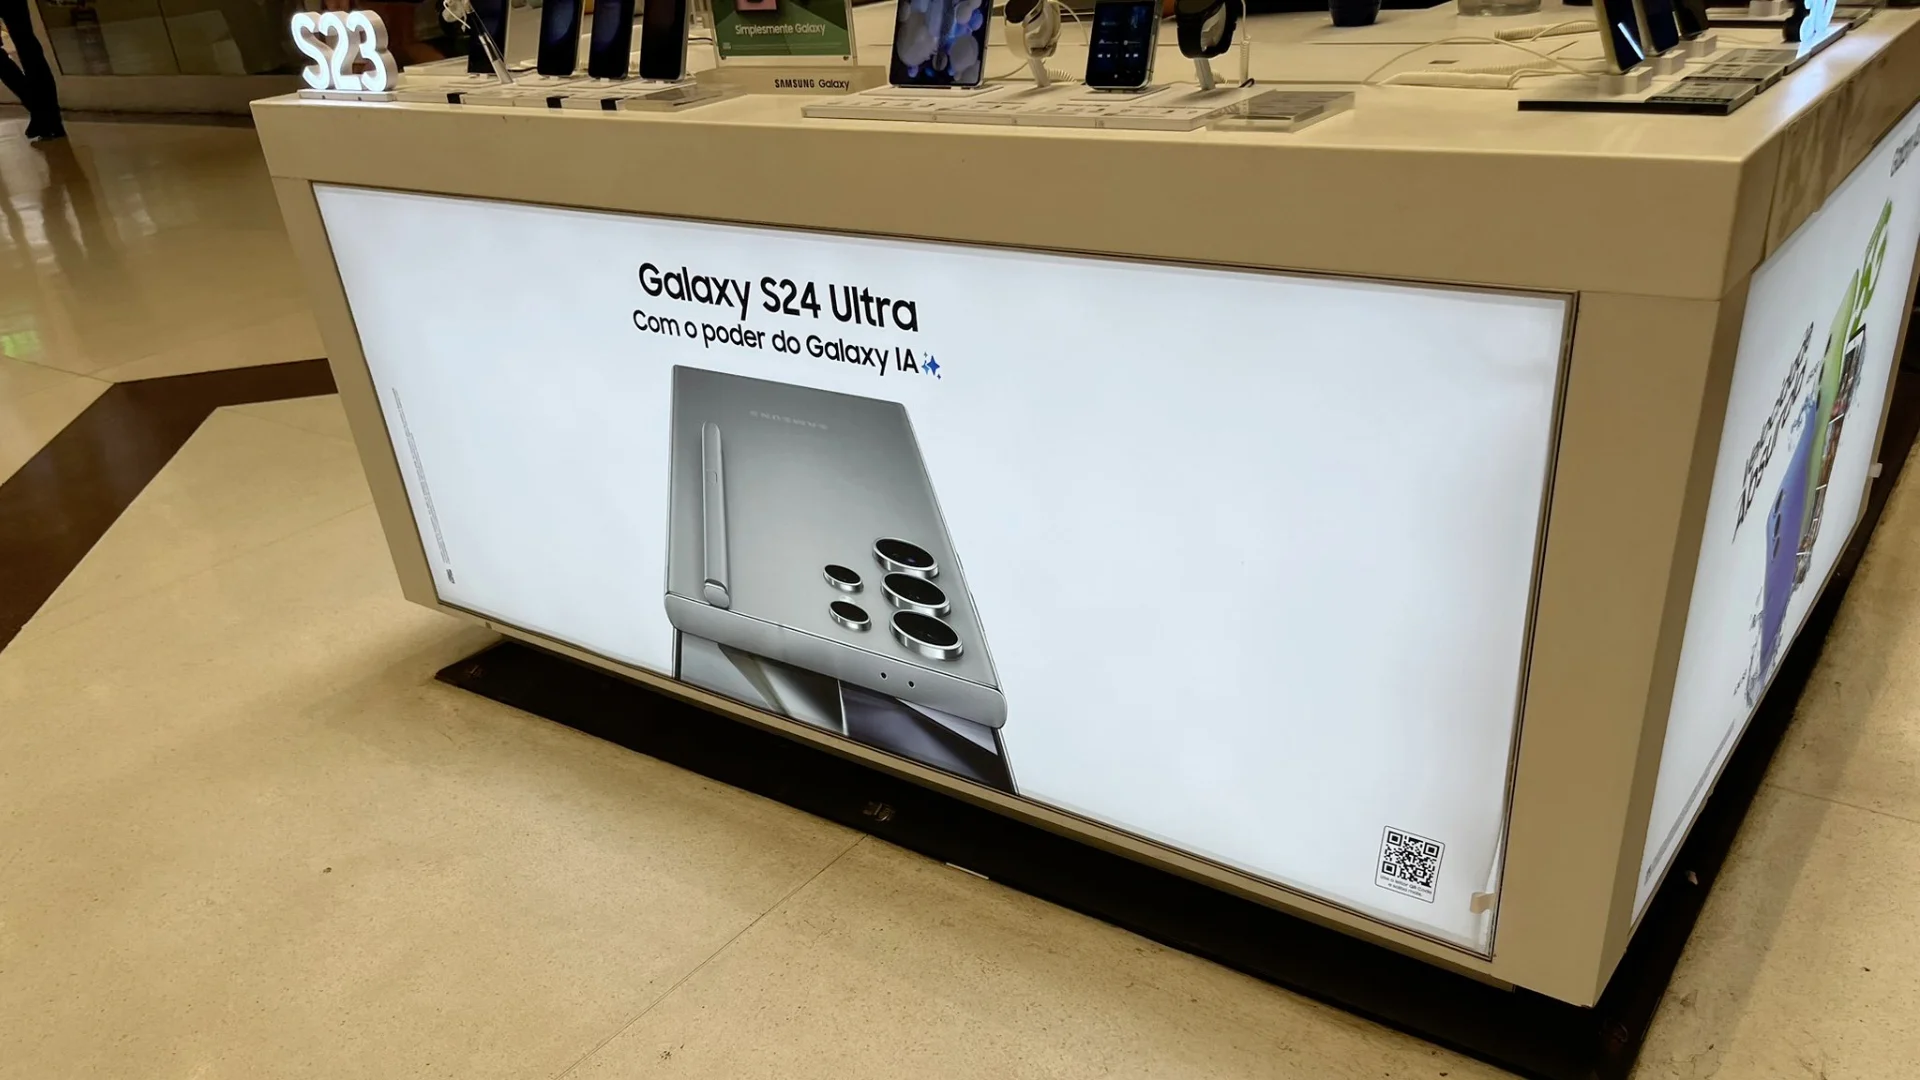 Offisielle bilder av Samsung Galaxy S24 Ultra har lekket ut